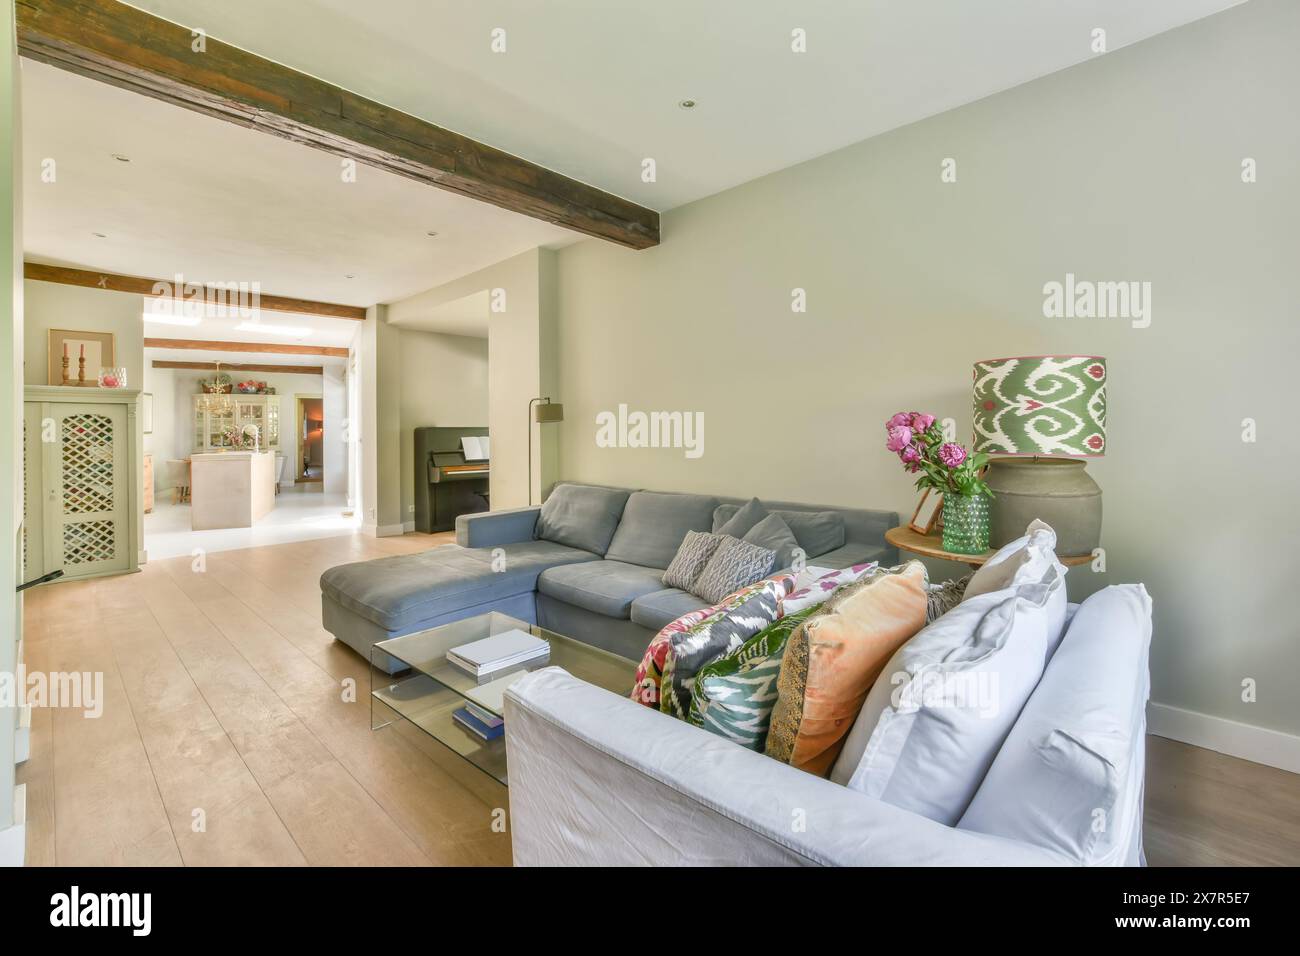 Ein wunderschön eingerichtetes Wohnzimmer mit freiliegenden Holzbalken, einem stilvollen grauen Sofa und floralen Akzenten machen den Raum zum Wohlfühlen Stockfoto